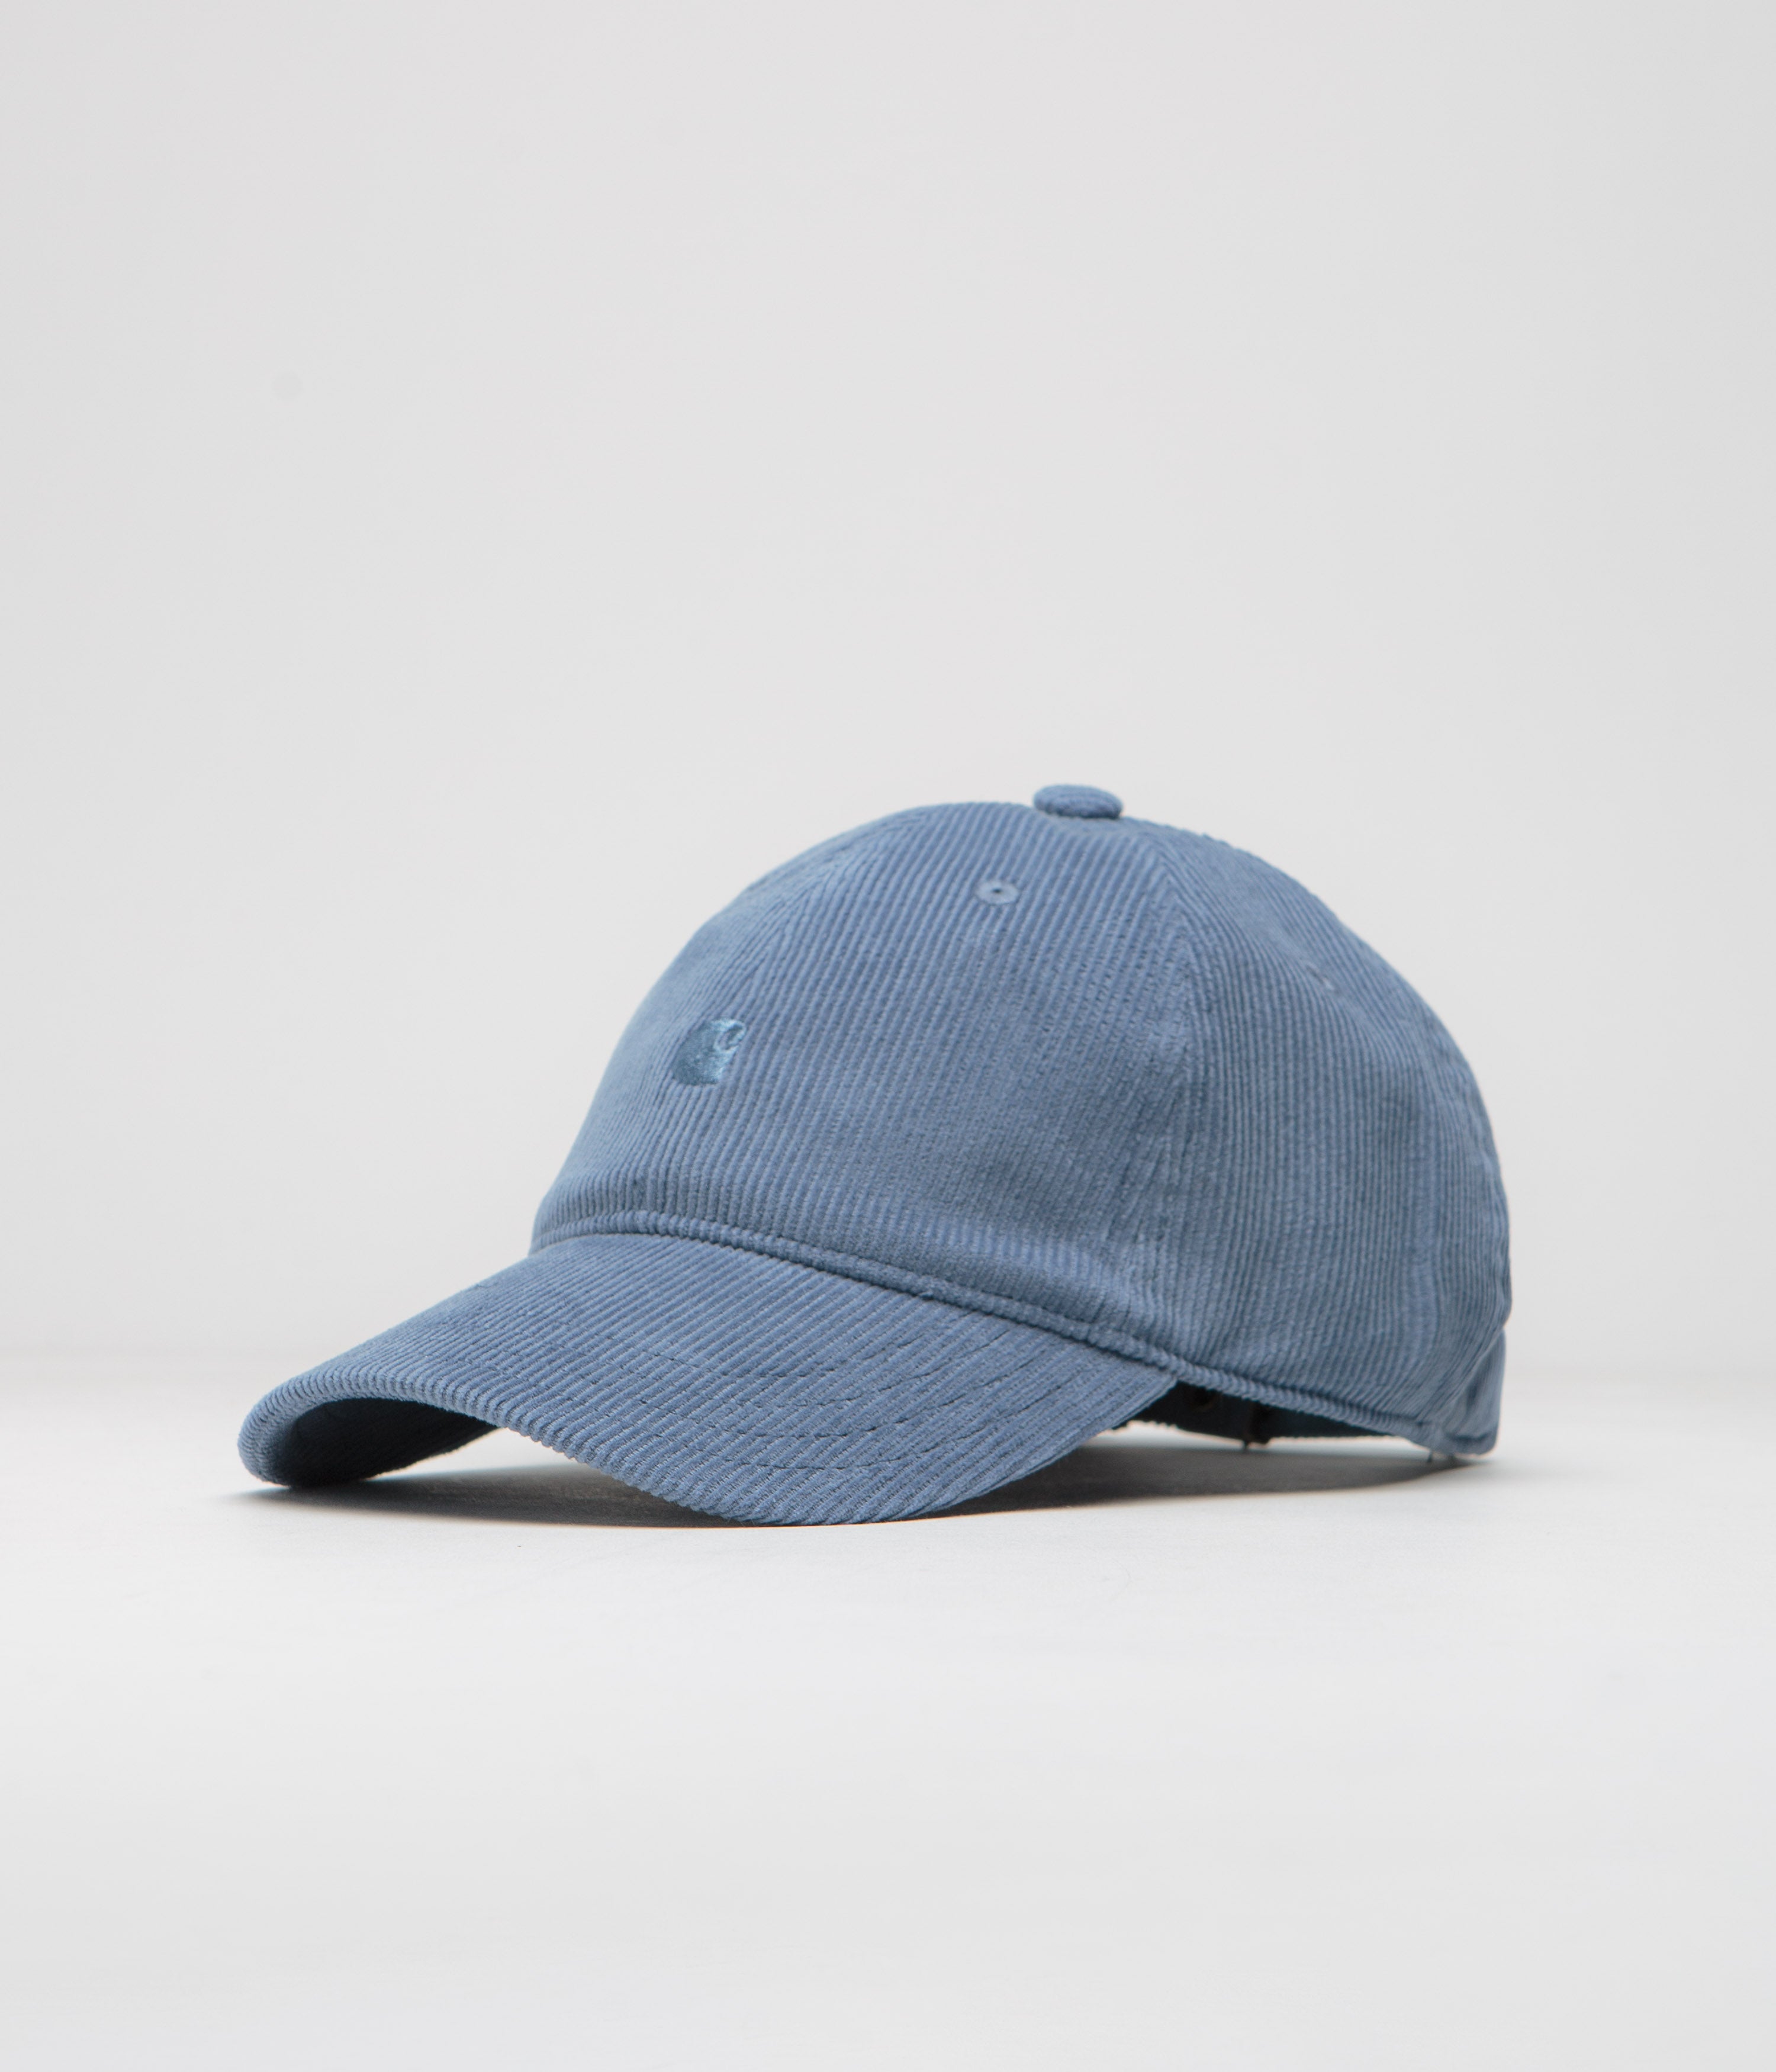 Hats nata | Caps - Cheap Ilunionhotels Jordan Outlet | Spend £85 